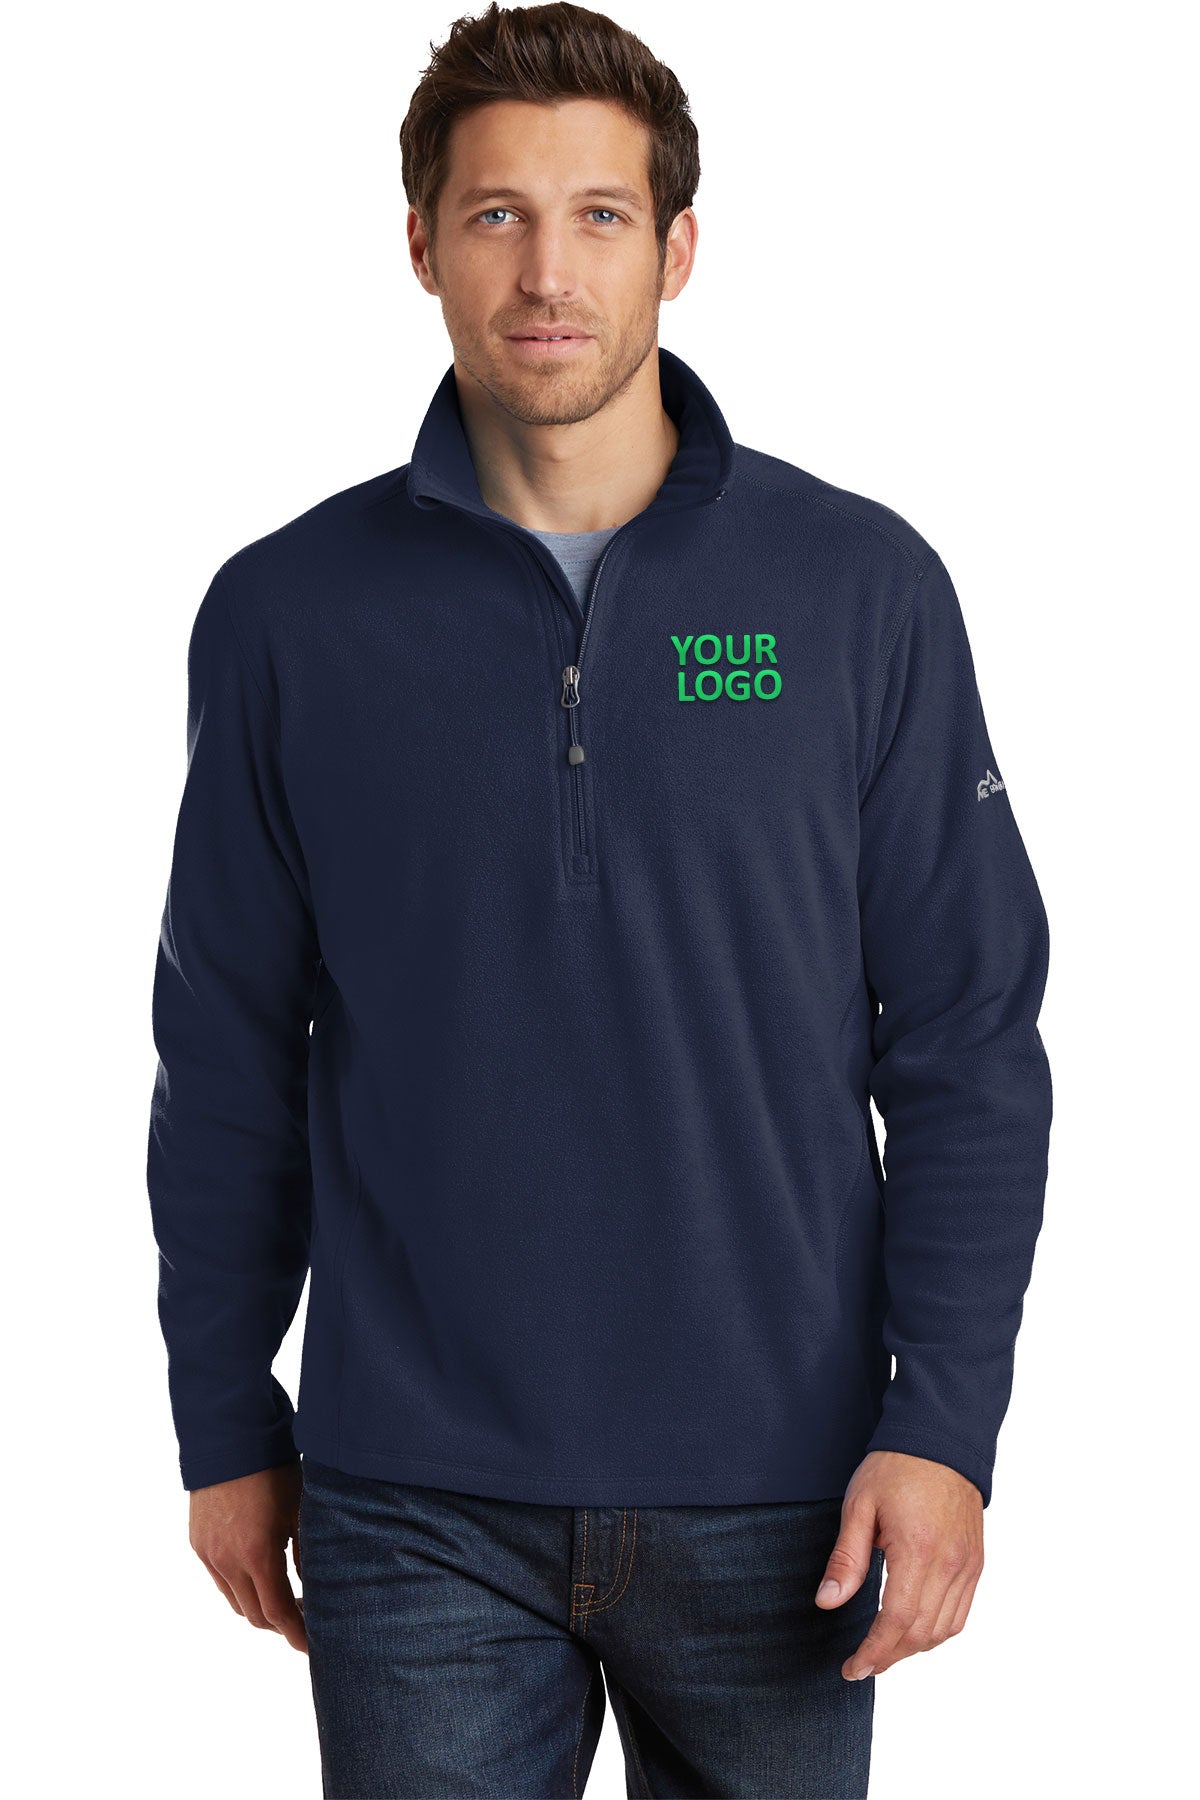 Eddie Bauer Navy EB226 custom business sweatshirts